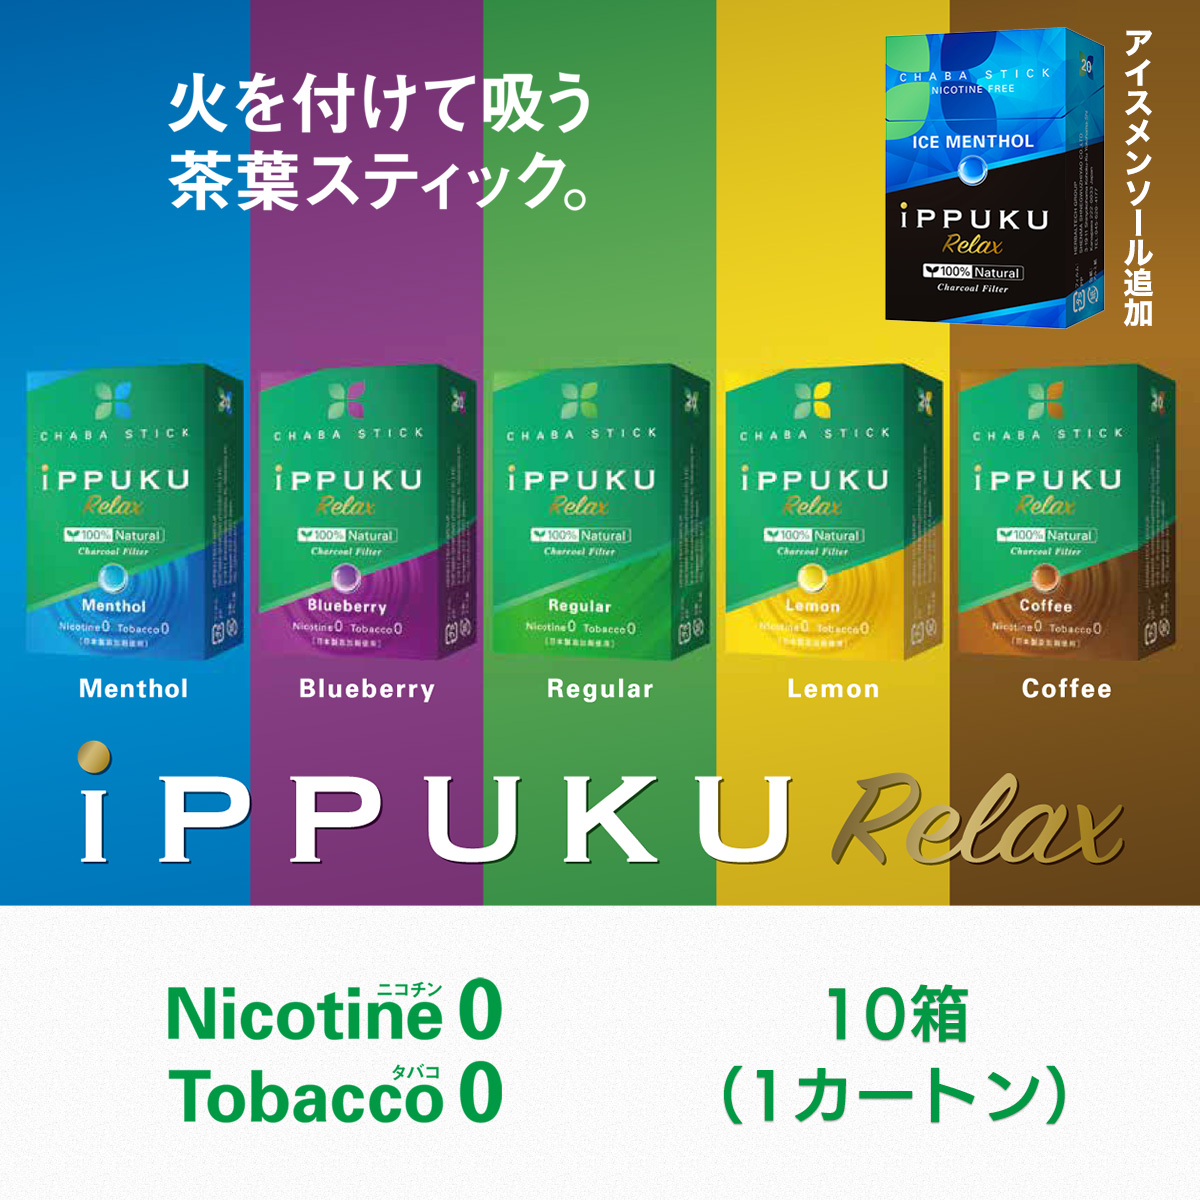 イップク・リラックス iPPUKU RELAX 1カートン‐禁煙 タバコ ノーニコチン 茶葉スティック ニコチンゼロ  メンソール 禁煙用グッズ プーアール茶 タバコ代用品